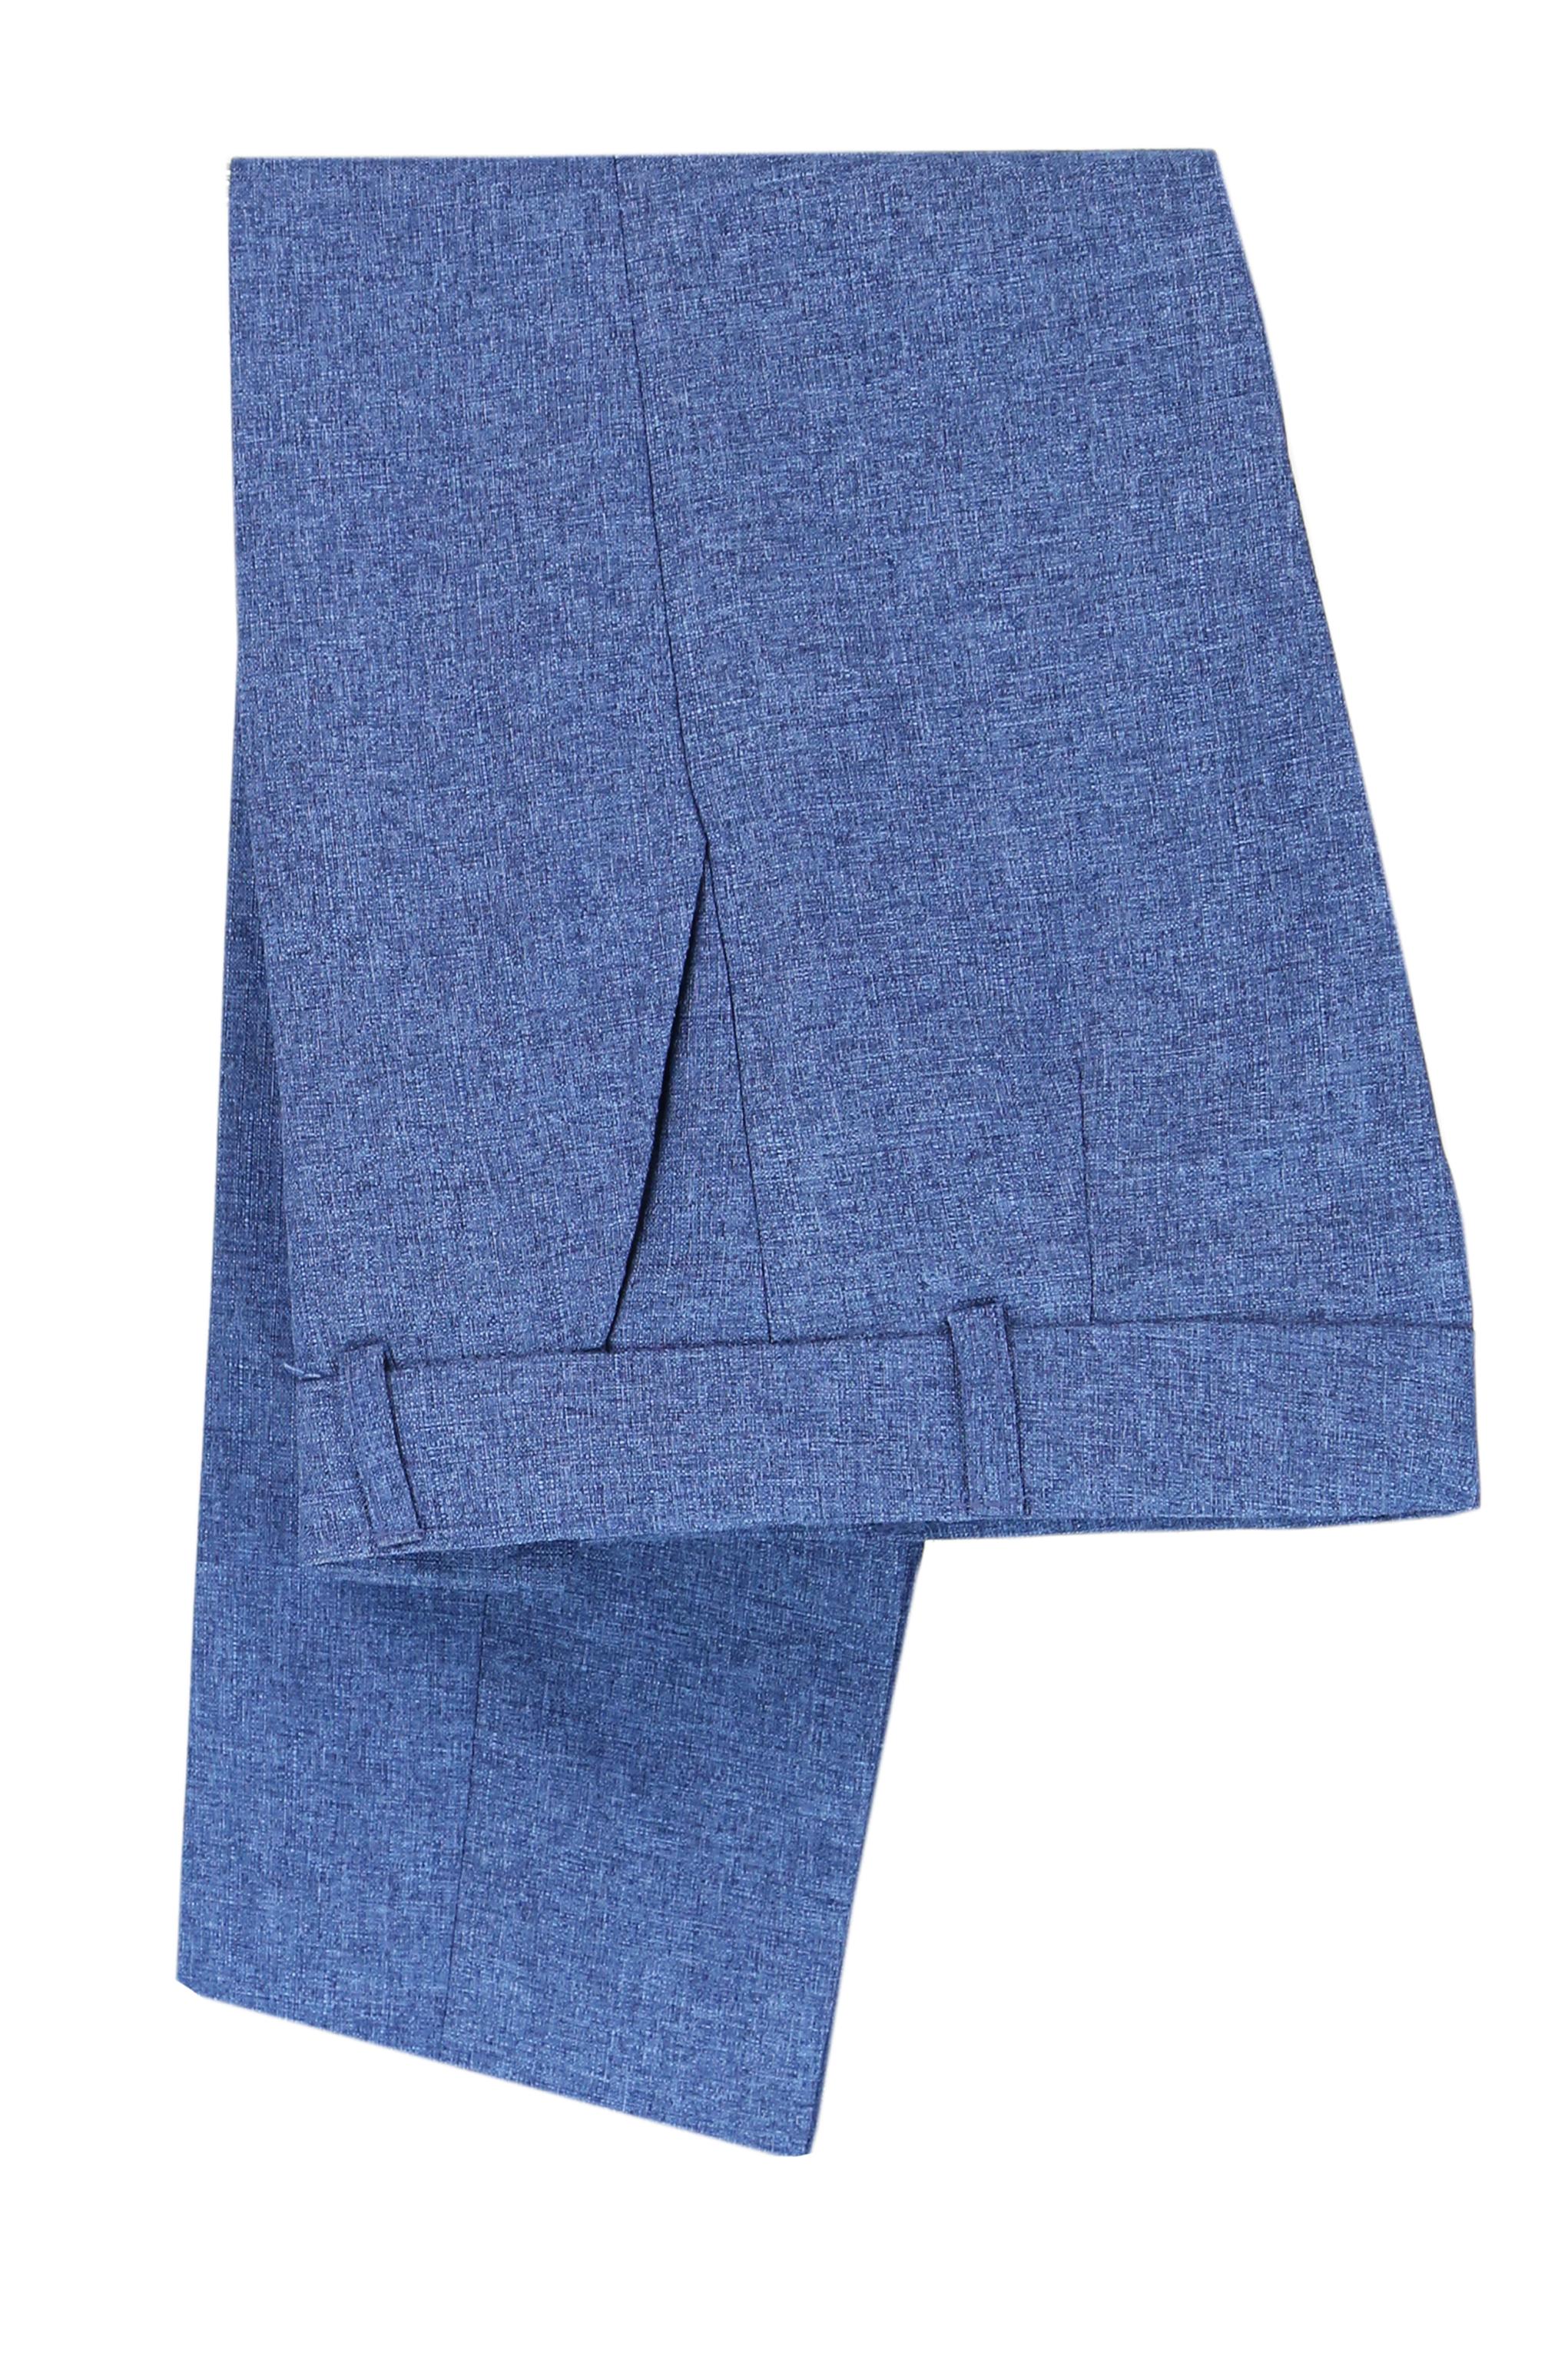 Boys Slim Fit Textured 6-Piece Formal Suit Set - Blue